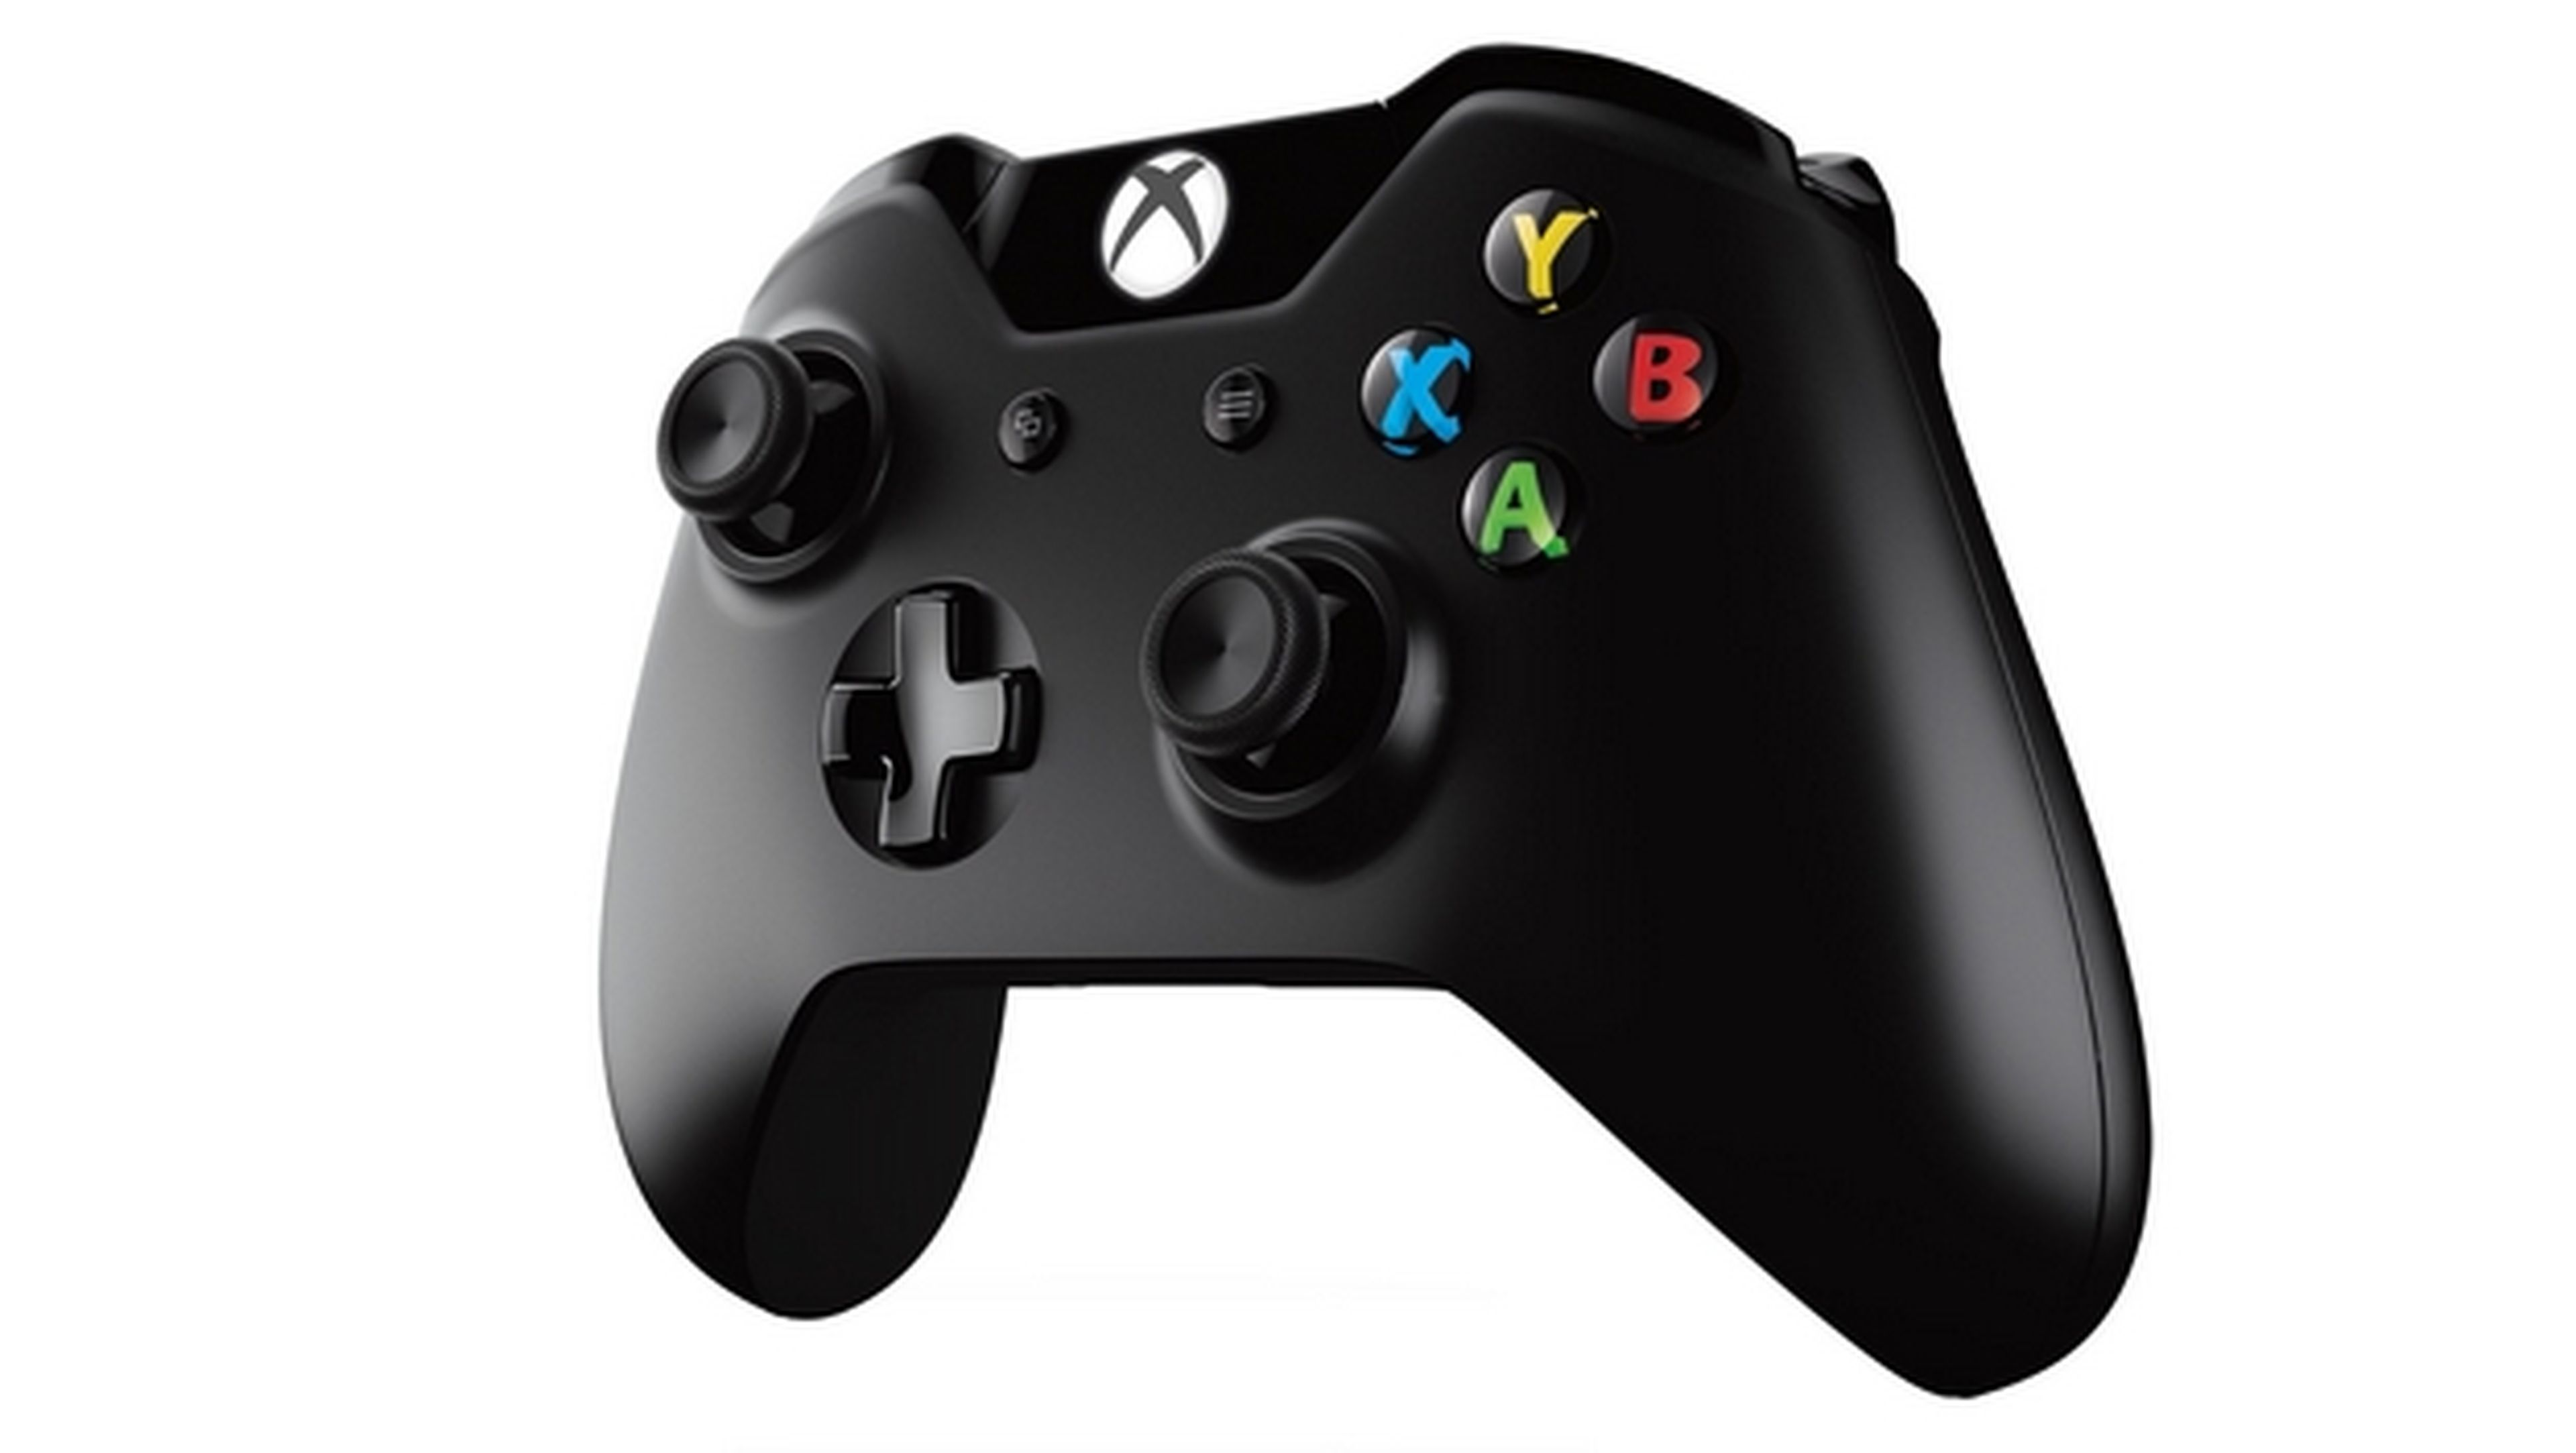 El gamepad de Xbox One ya es compatible con los juegos de PC, gracias a los drivers oficiales lanzados hoy